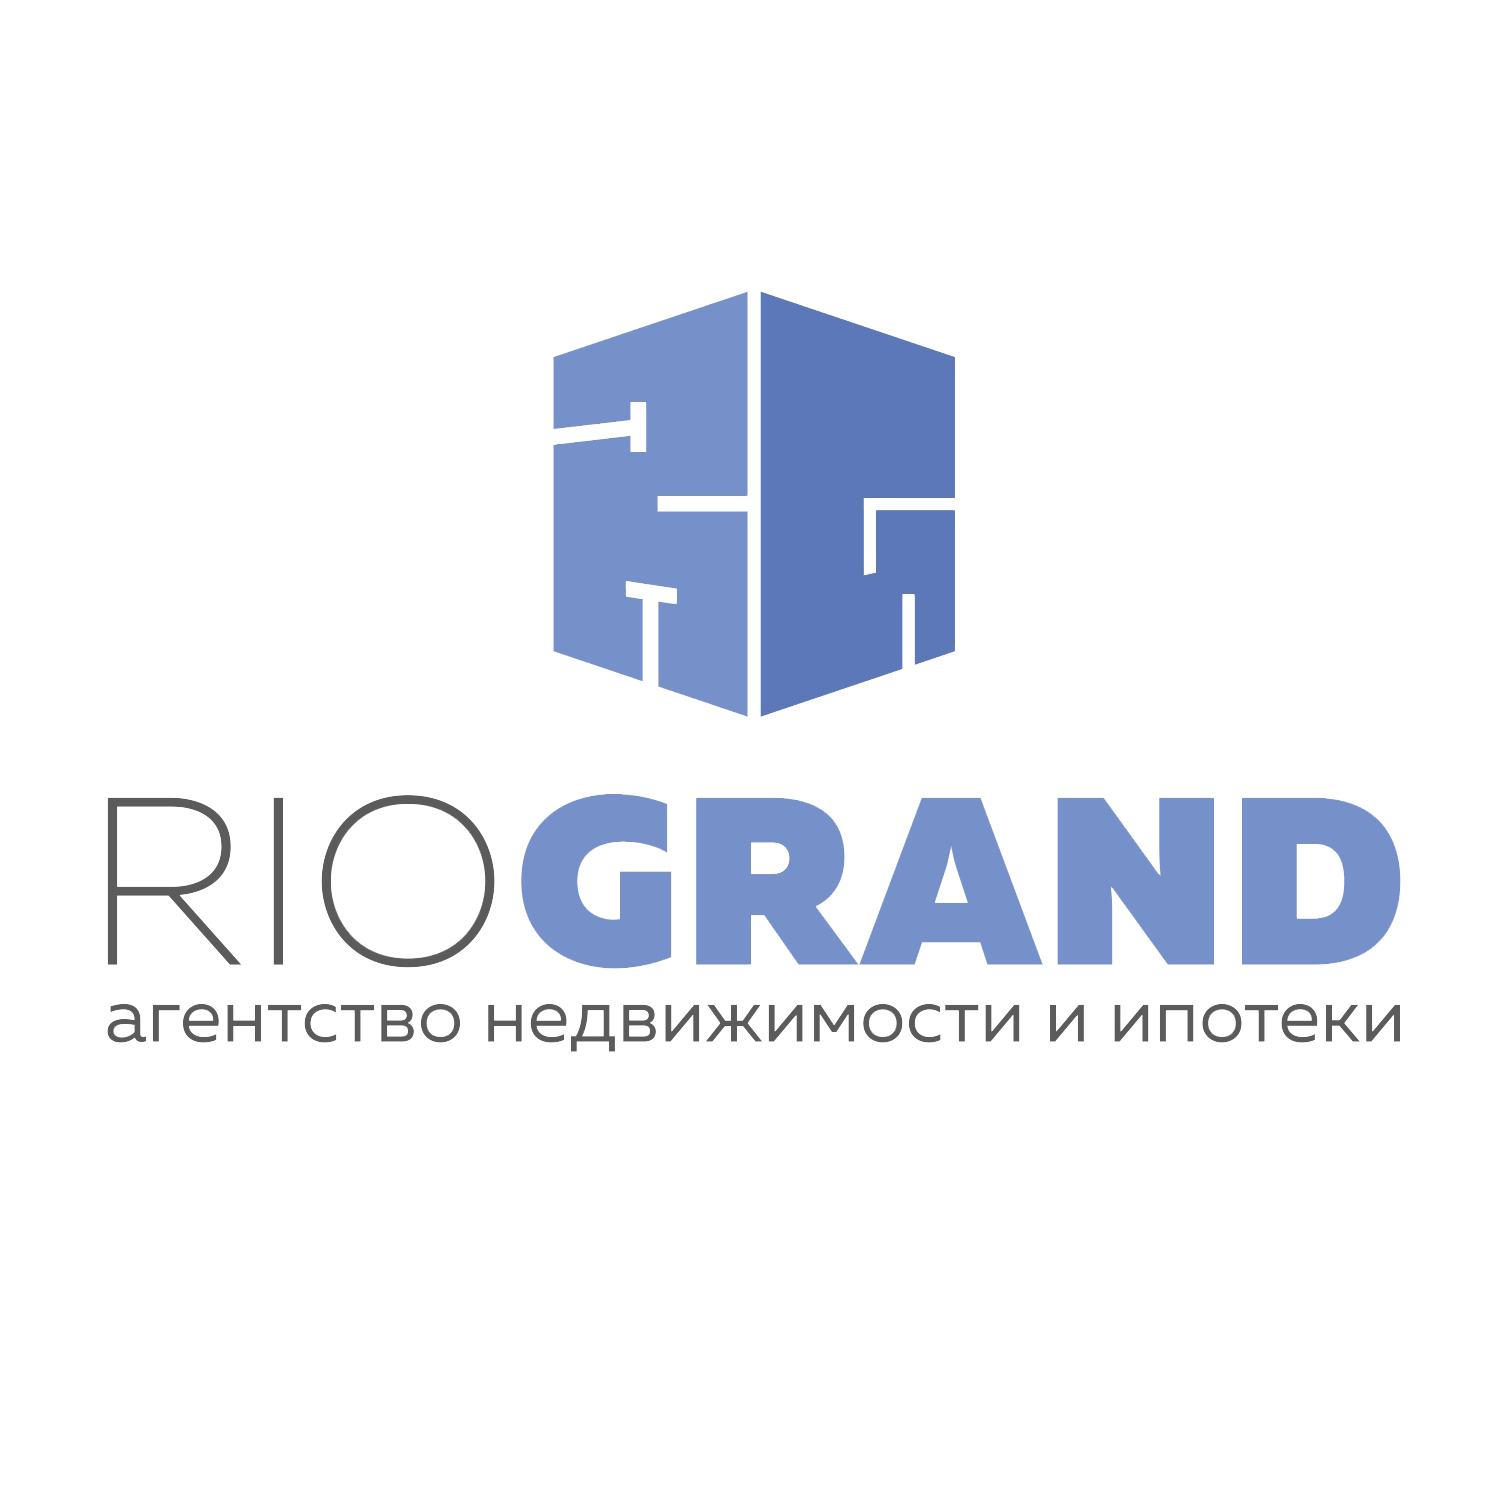 Фото / логотип АН РИО Гранд, Самара